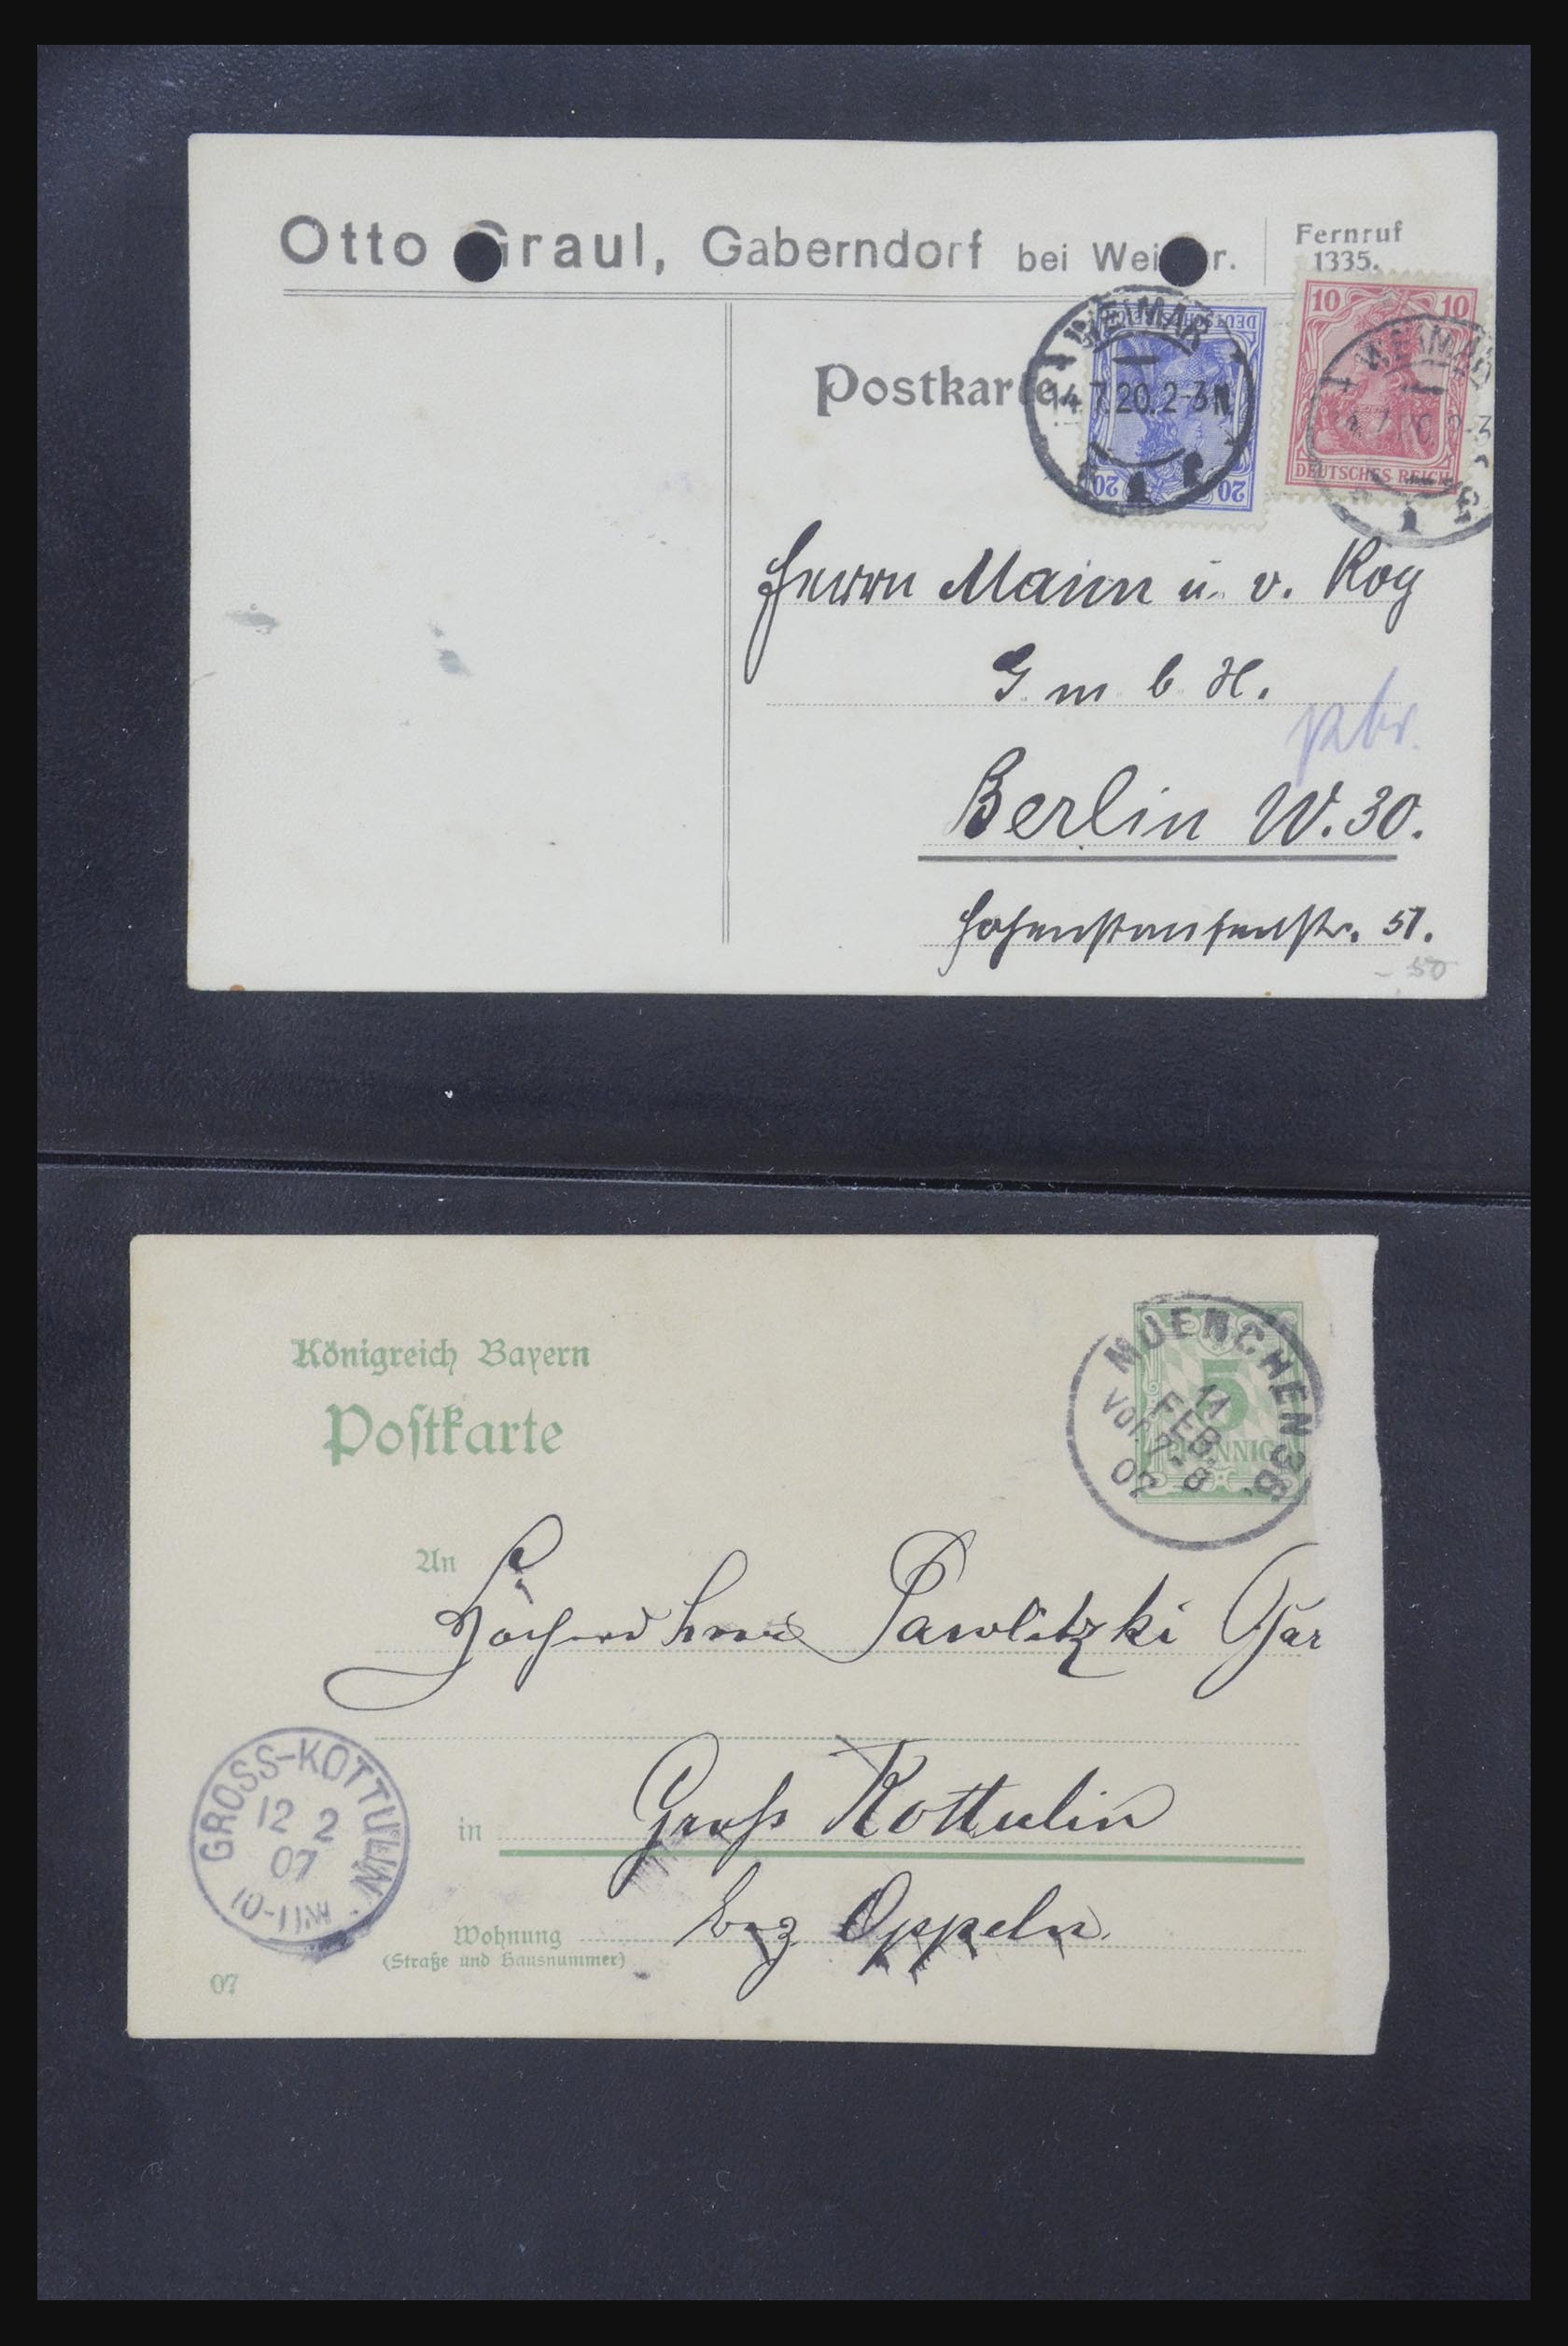 31952 425 - 31952 German Reich cards.